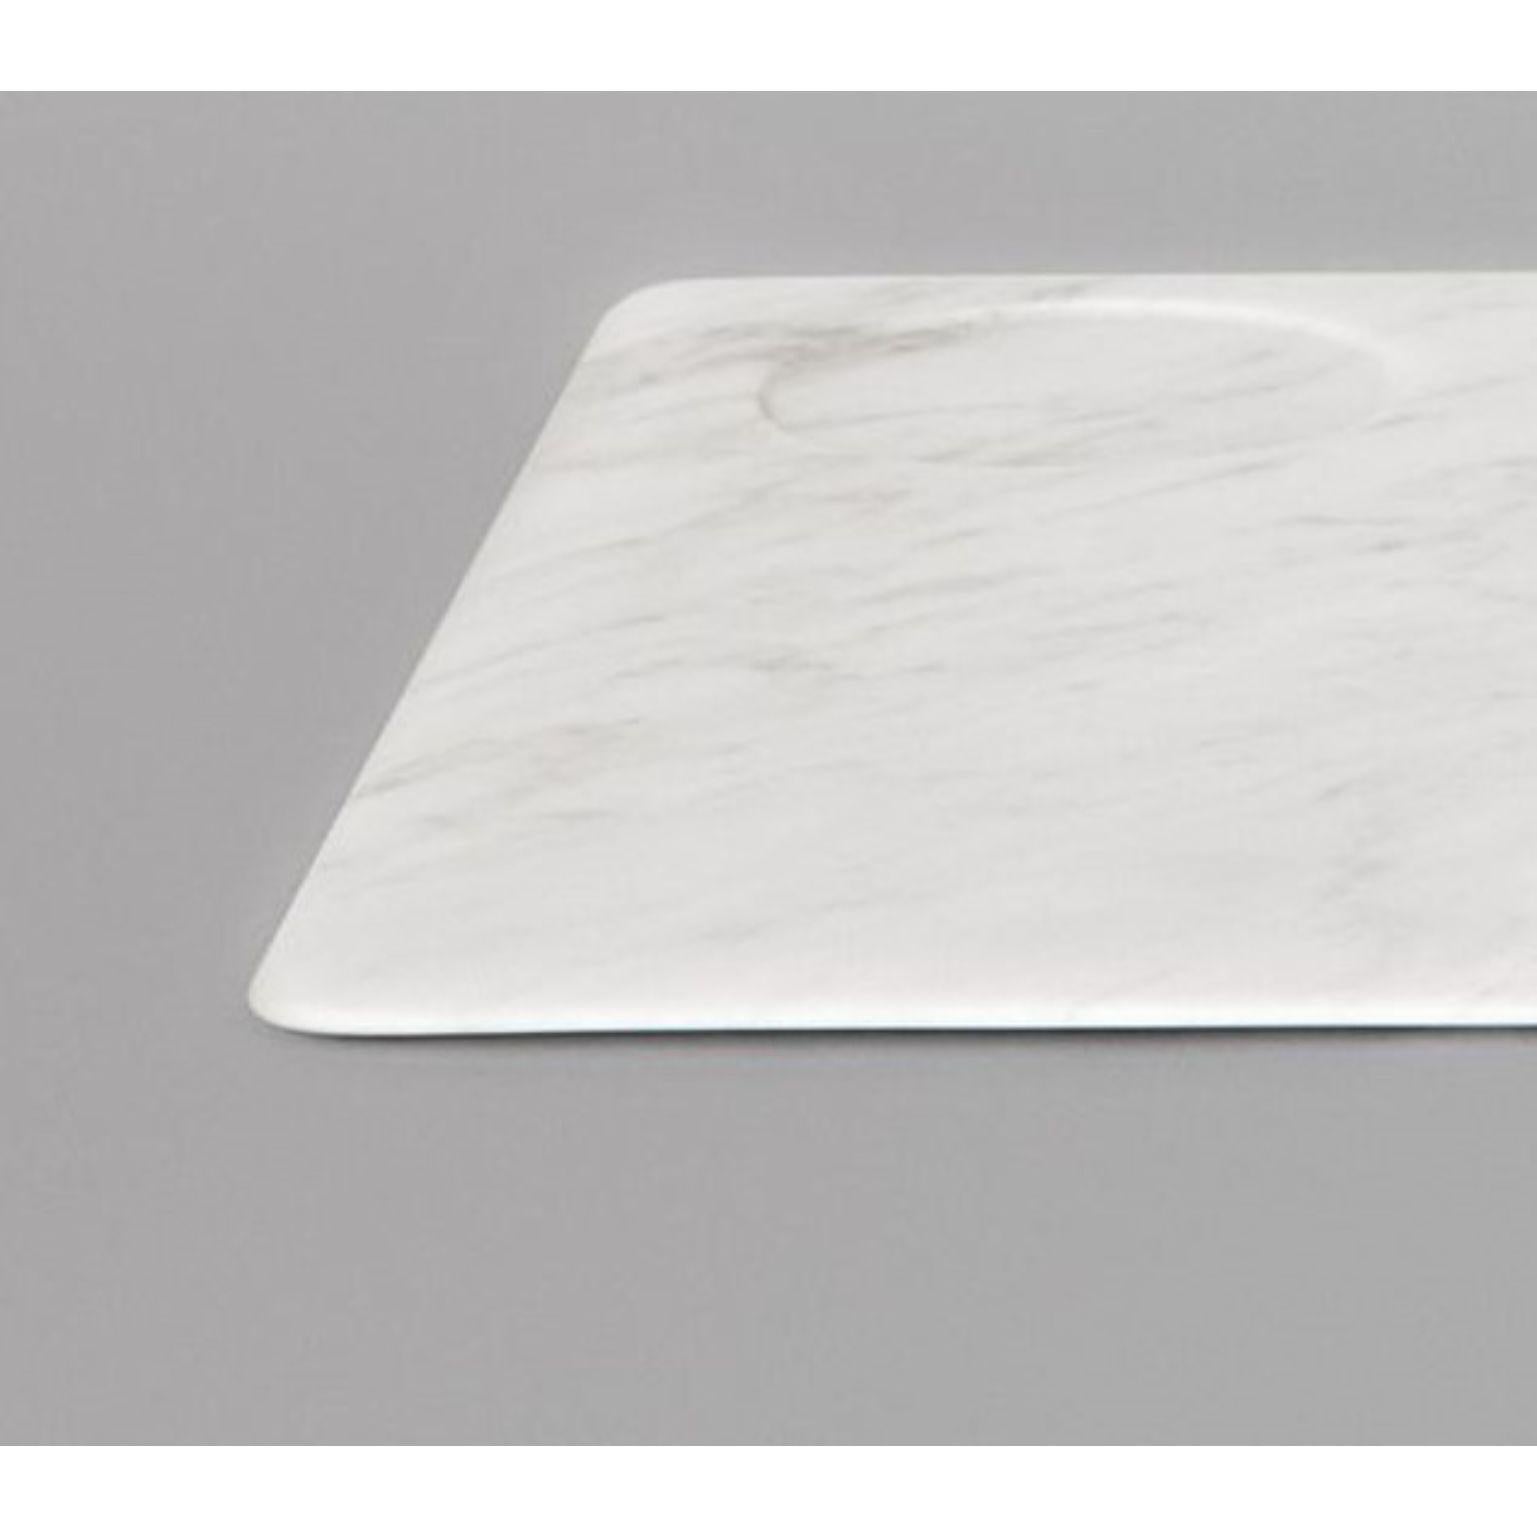 Tavoletta Serviertablett von Studioformart
Total Marble Collection'S
Abmessungen: 46 x 34 x 0,7 cm
MATERIALIEN: Bianco carrara 

Die Geschichte der Marmorschnitzerei verliert sich in der Zeit; sie führt uns in einem Atemzug zurück ins IV.